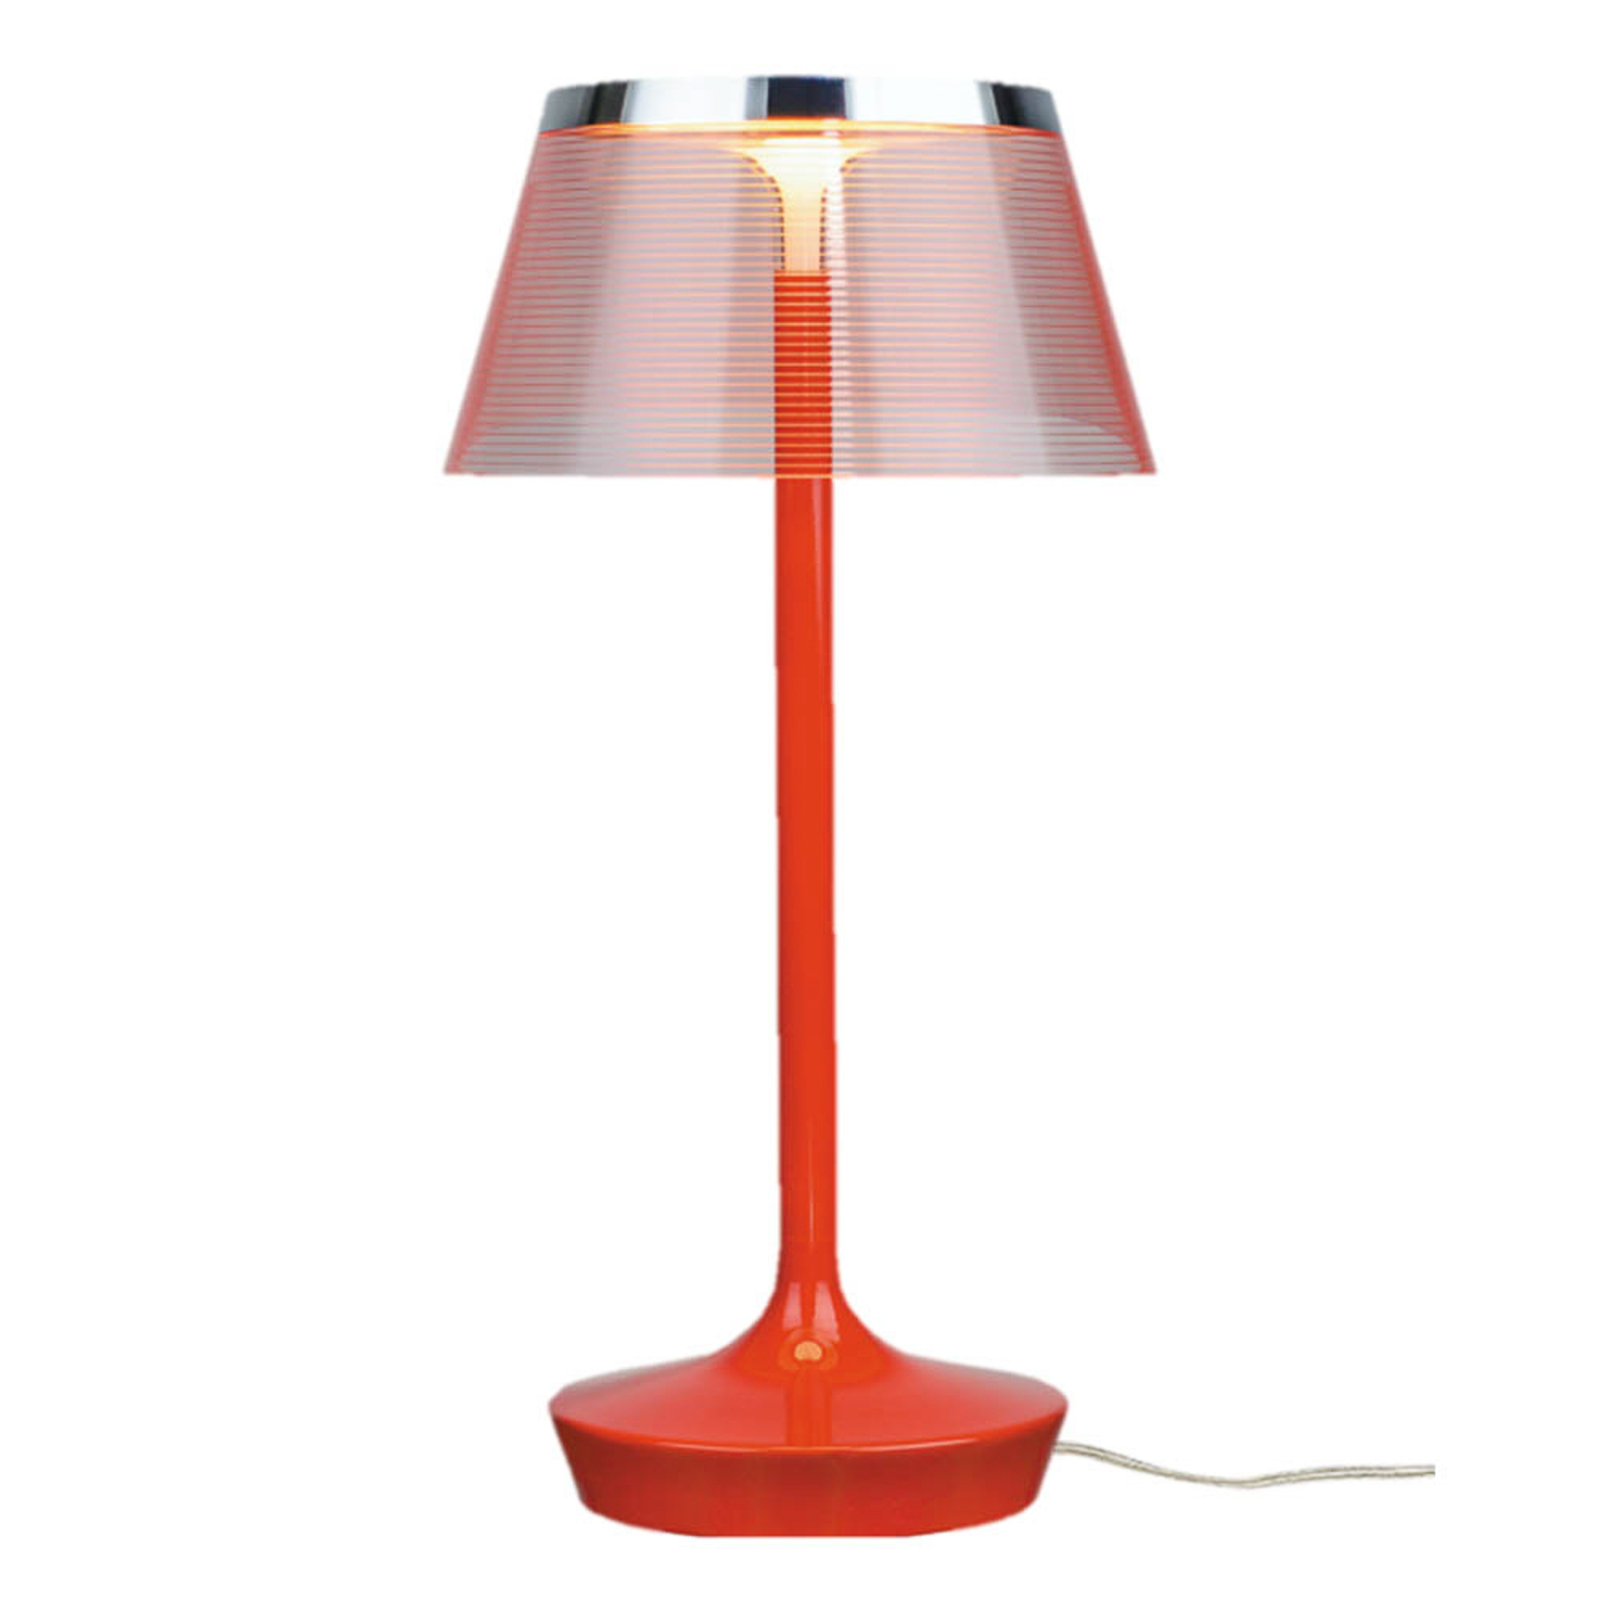 Aluminor La Petite Lampe lámpara de mesa LED, rojo